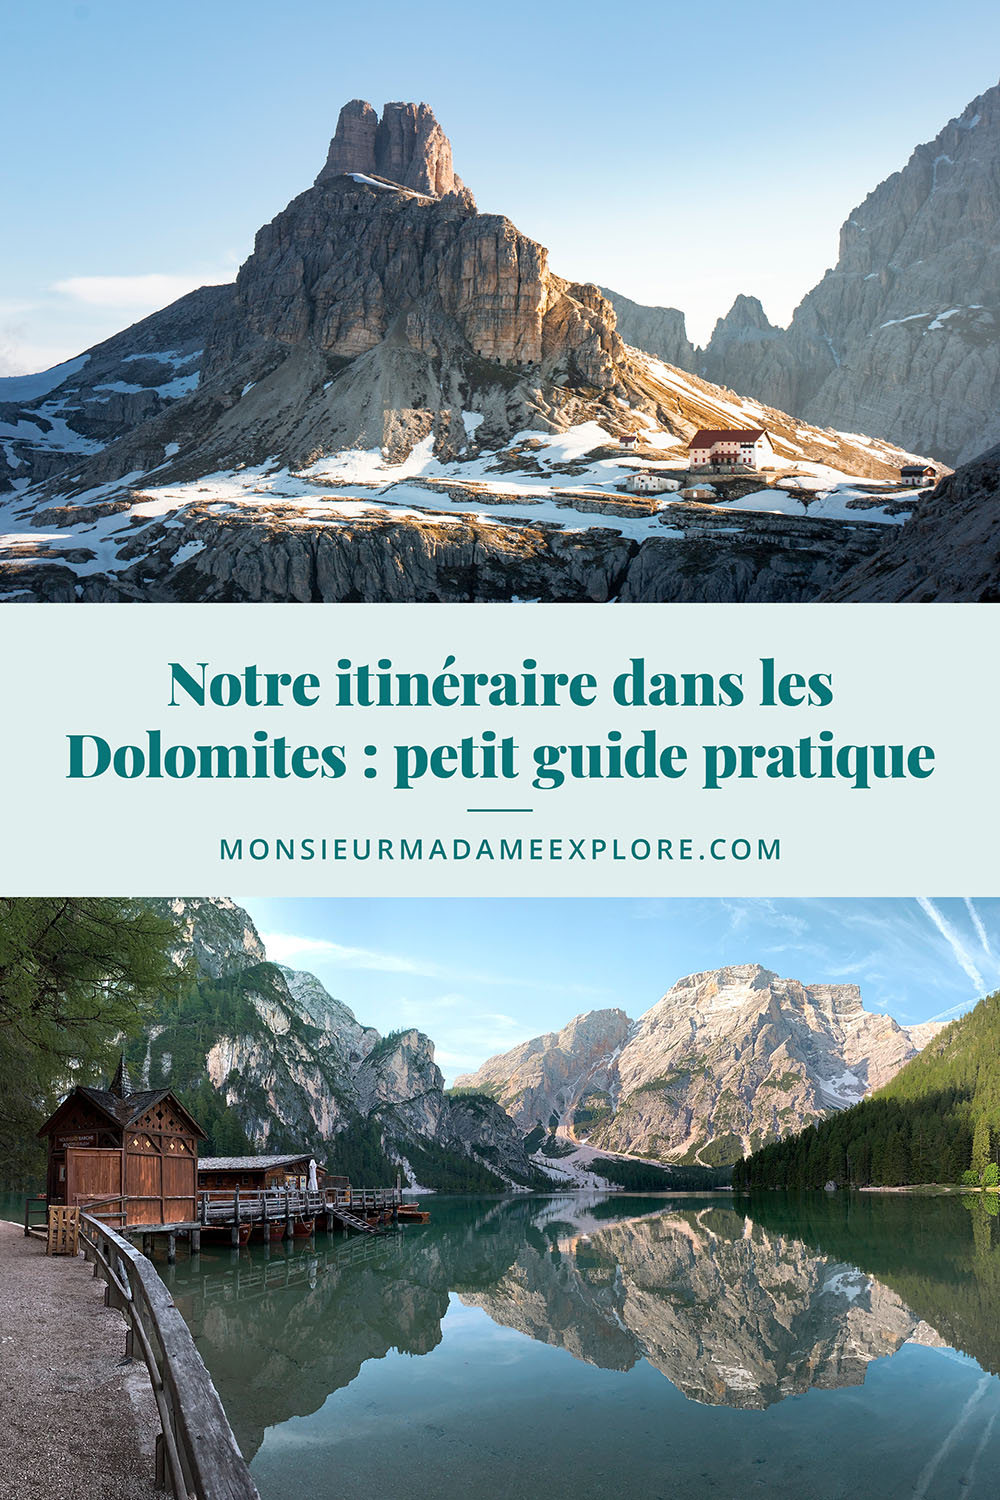 Notre itinéraire dans les Dolomites : petit guide pratique, Monsieur+Madame Explore, Blogue de voyage, Italie / Tips to plan your trip in the Dolomites, Italy